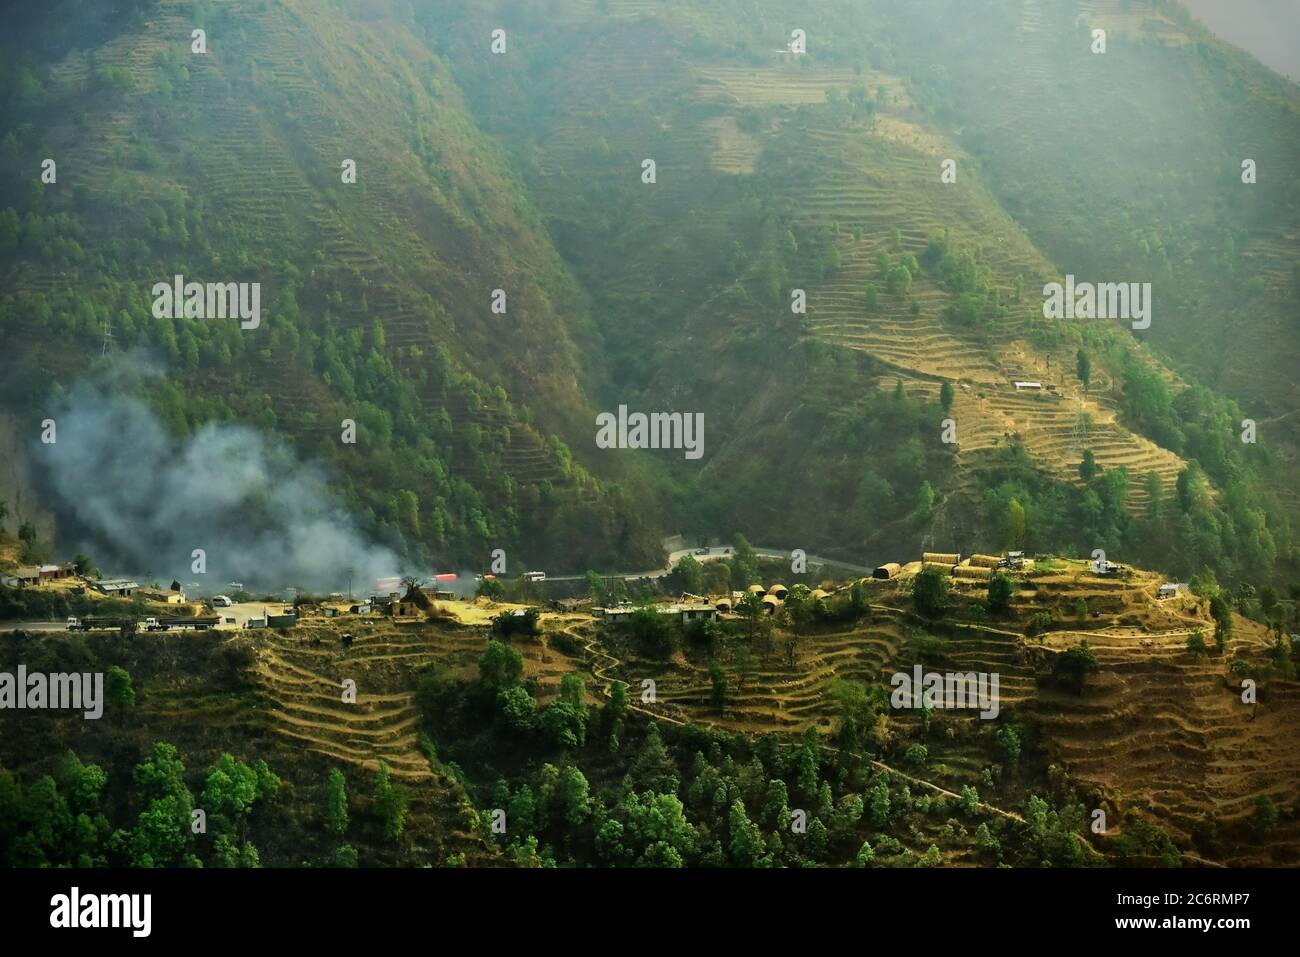 Ein Blick auf eine Straße, ein Teil von Nepals Strategic Road Network (SRN), und Siedlungen, die auf einem steilen Hügel am Rande des Kathmandu Valley, am Rande der Stadt Kathmandu, Nepal. Archivfoto (2016). Das Straßennetz in Nepal erlitt durch das Erdbeben von 2015 mäßige Schäden. Die geschätzten Schäden für das strategische Straßennetz (SRN) betrugten 45.9 Millionen USD, während die Gesamtverluste auf 5.26 Millionen USD geschätzt wurden. Auf Local Road Network (LRN) betrug der geschätzte Gesamtschäden 124.85 Millionen USD, während der Gesamtschäden 42.74 Millionen USD betrug. Stockfoto